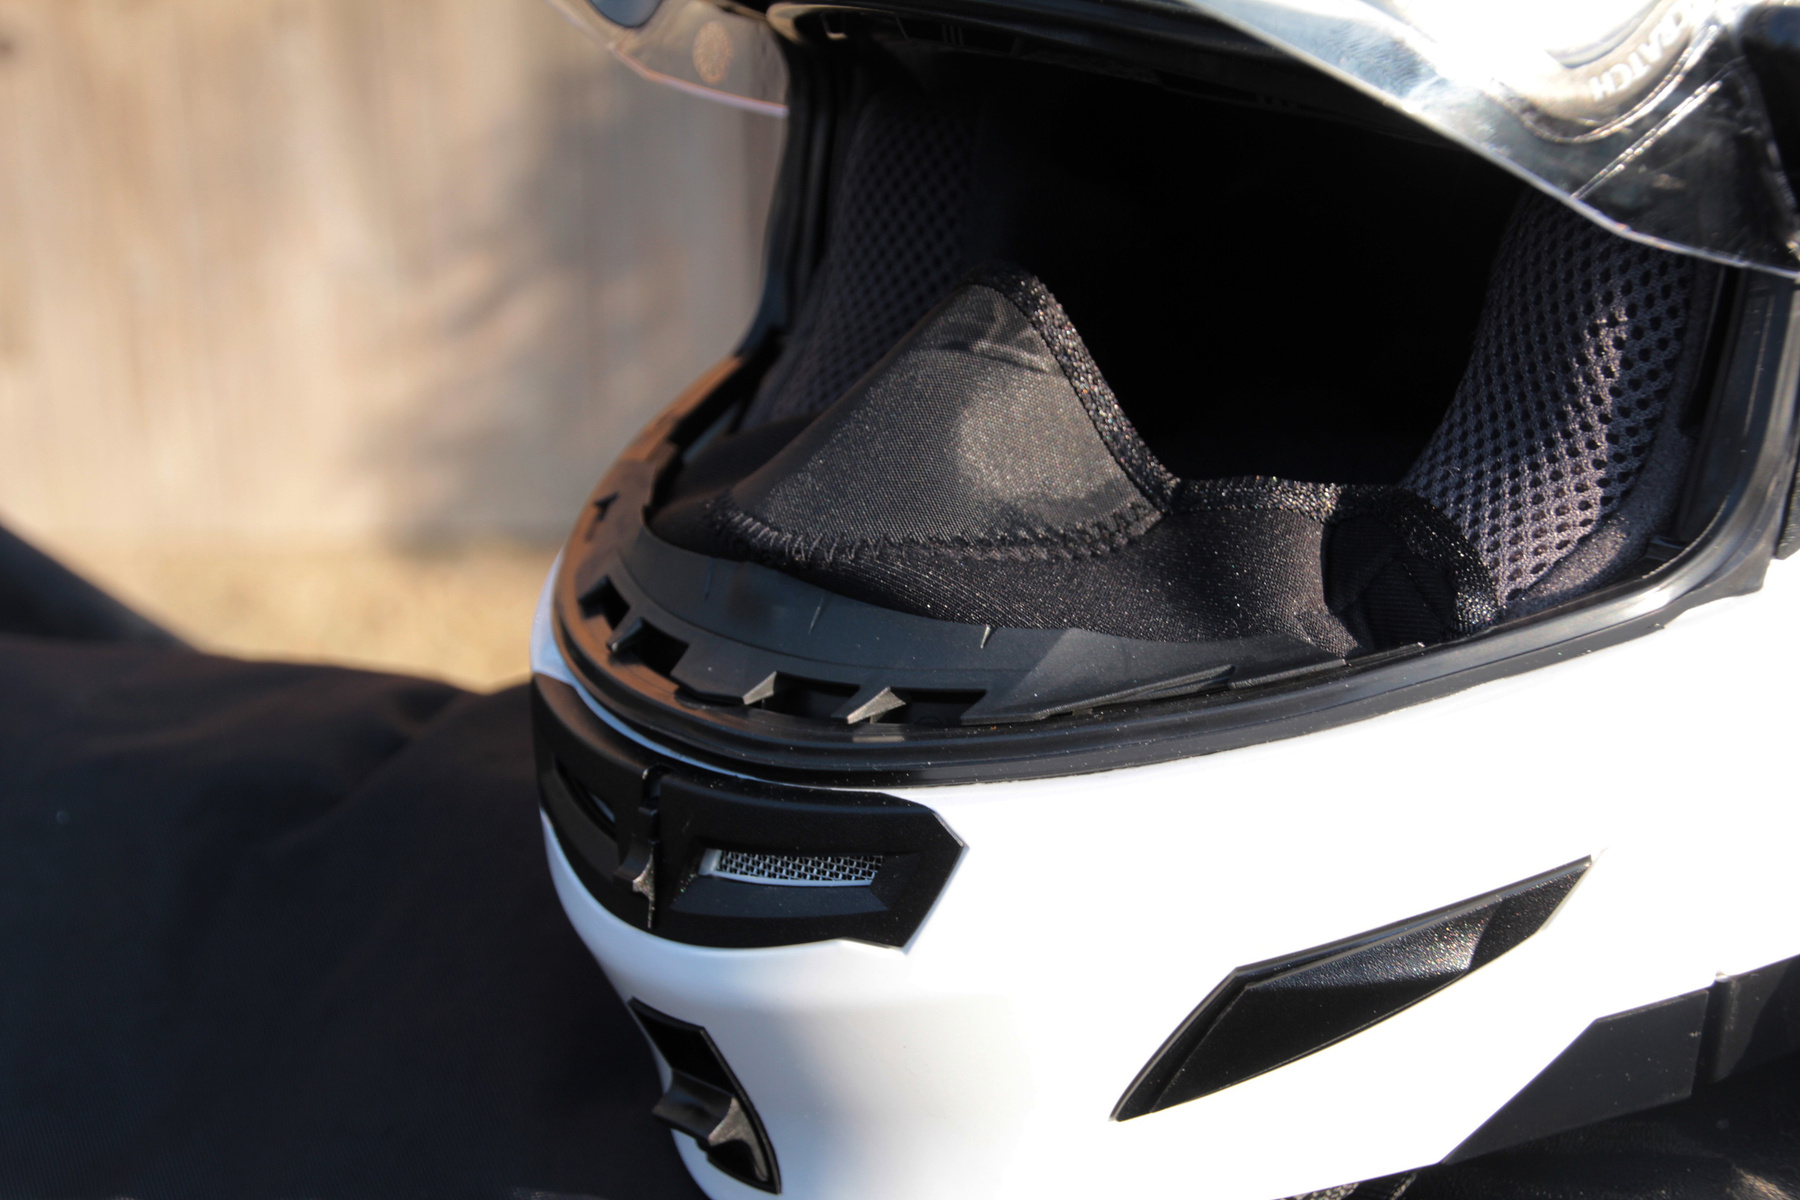 A felnyitott állvédővel motorozást megnehezíti, hogy a napszemüveget mozgató gomb ilyenkor csak körülményesem elérhető, a plexi alá kell nyúlni